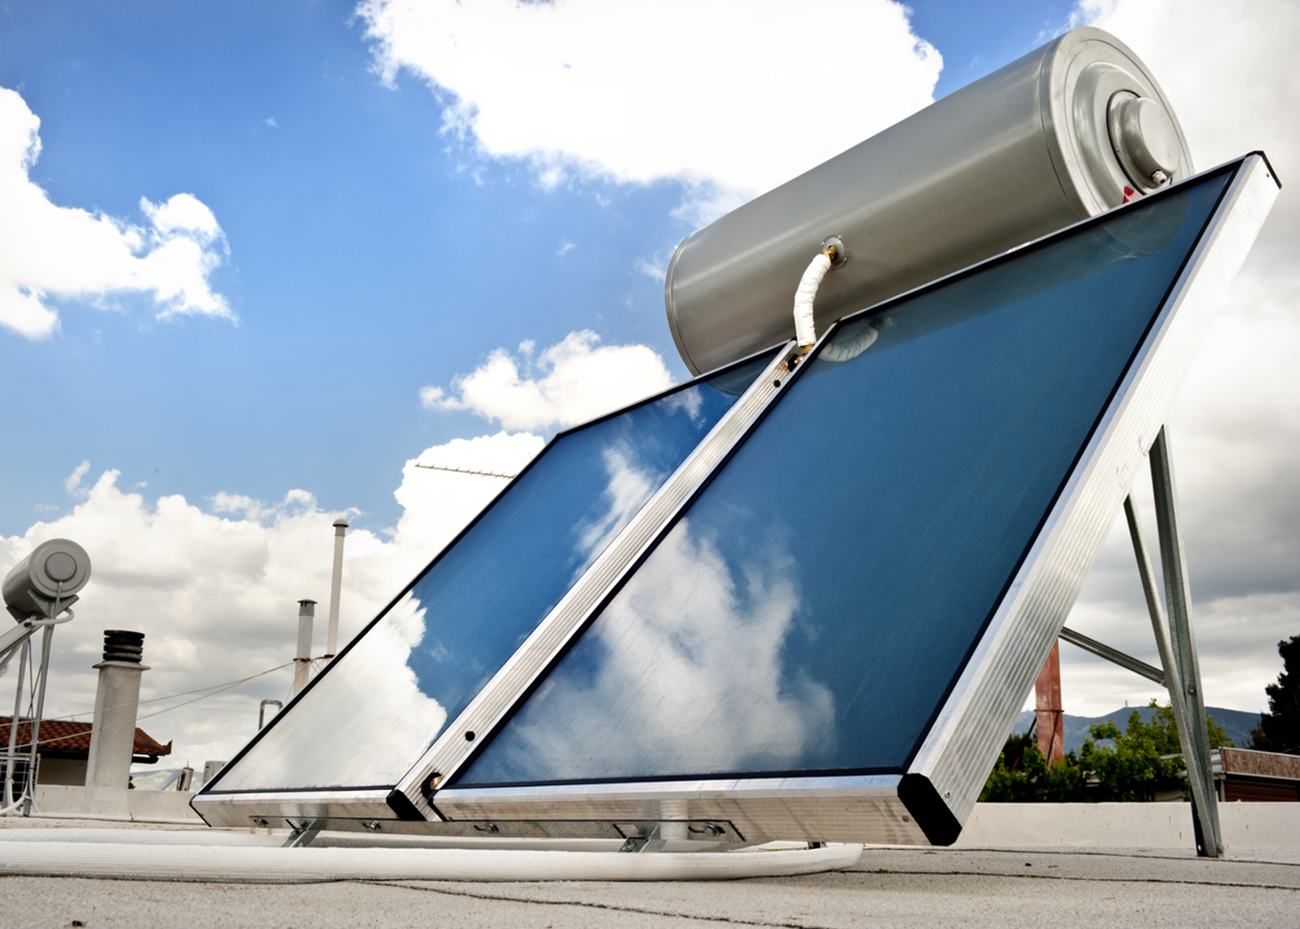 Ανακυκλώνω – Αλλάζω Θερμοσίφωνα: Προϋποθέσεις και δικαιούχοι για επιδότηση αγοράς νέου ηλιακού θερμοσίφωνα